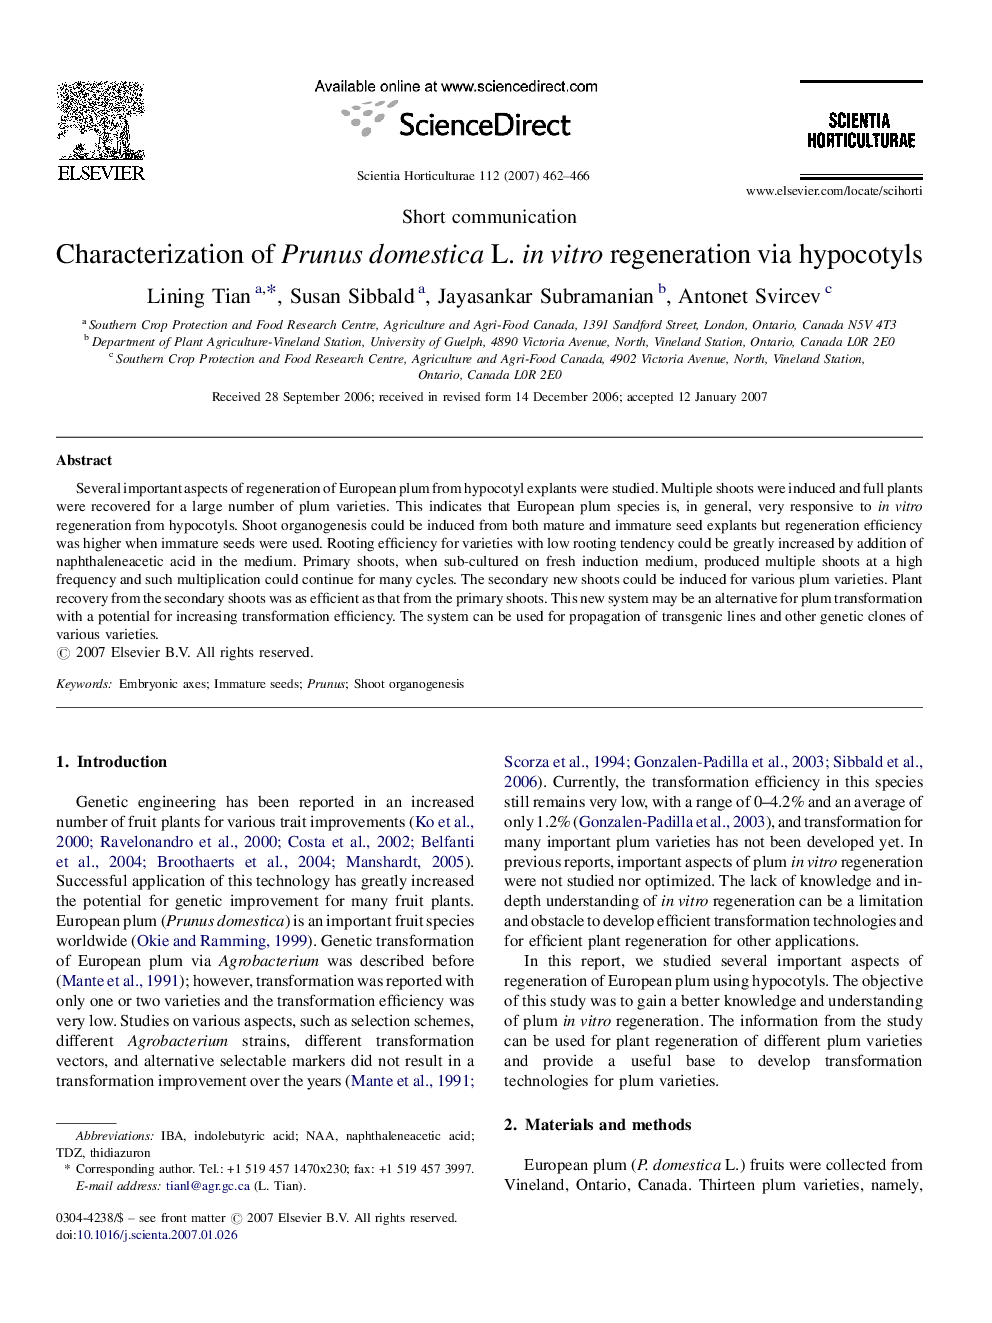 Characterization of Prunus domestica L. in vitro regeneration via hypocotyls